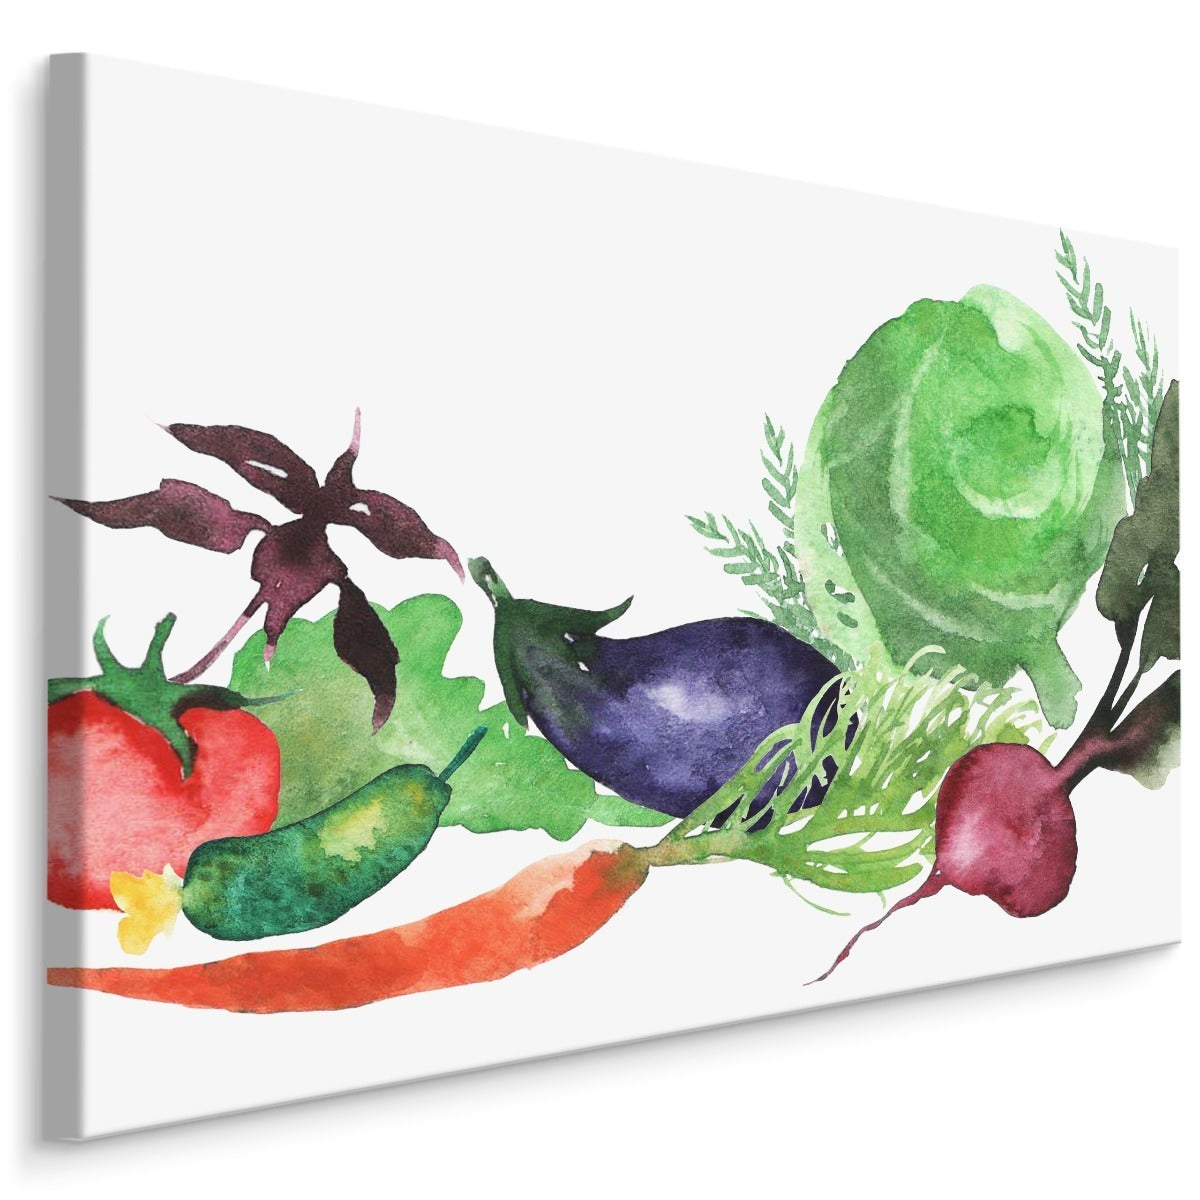 Friske grønnsaker malt med akvarell